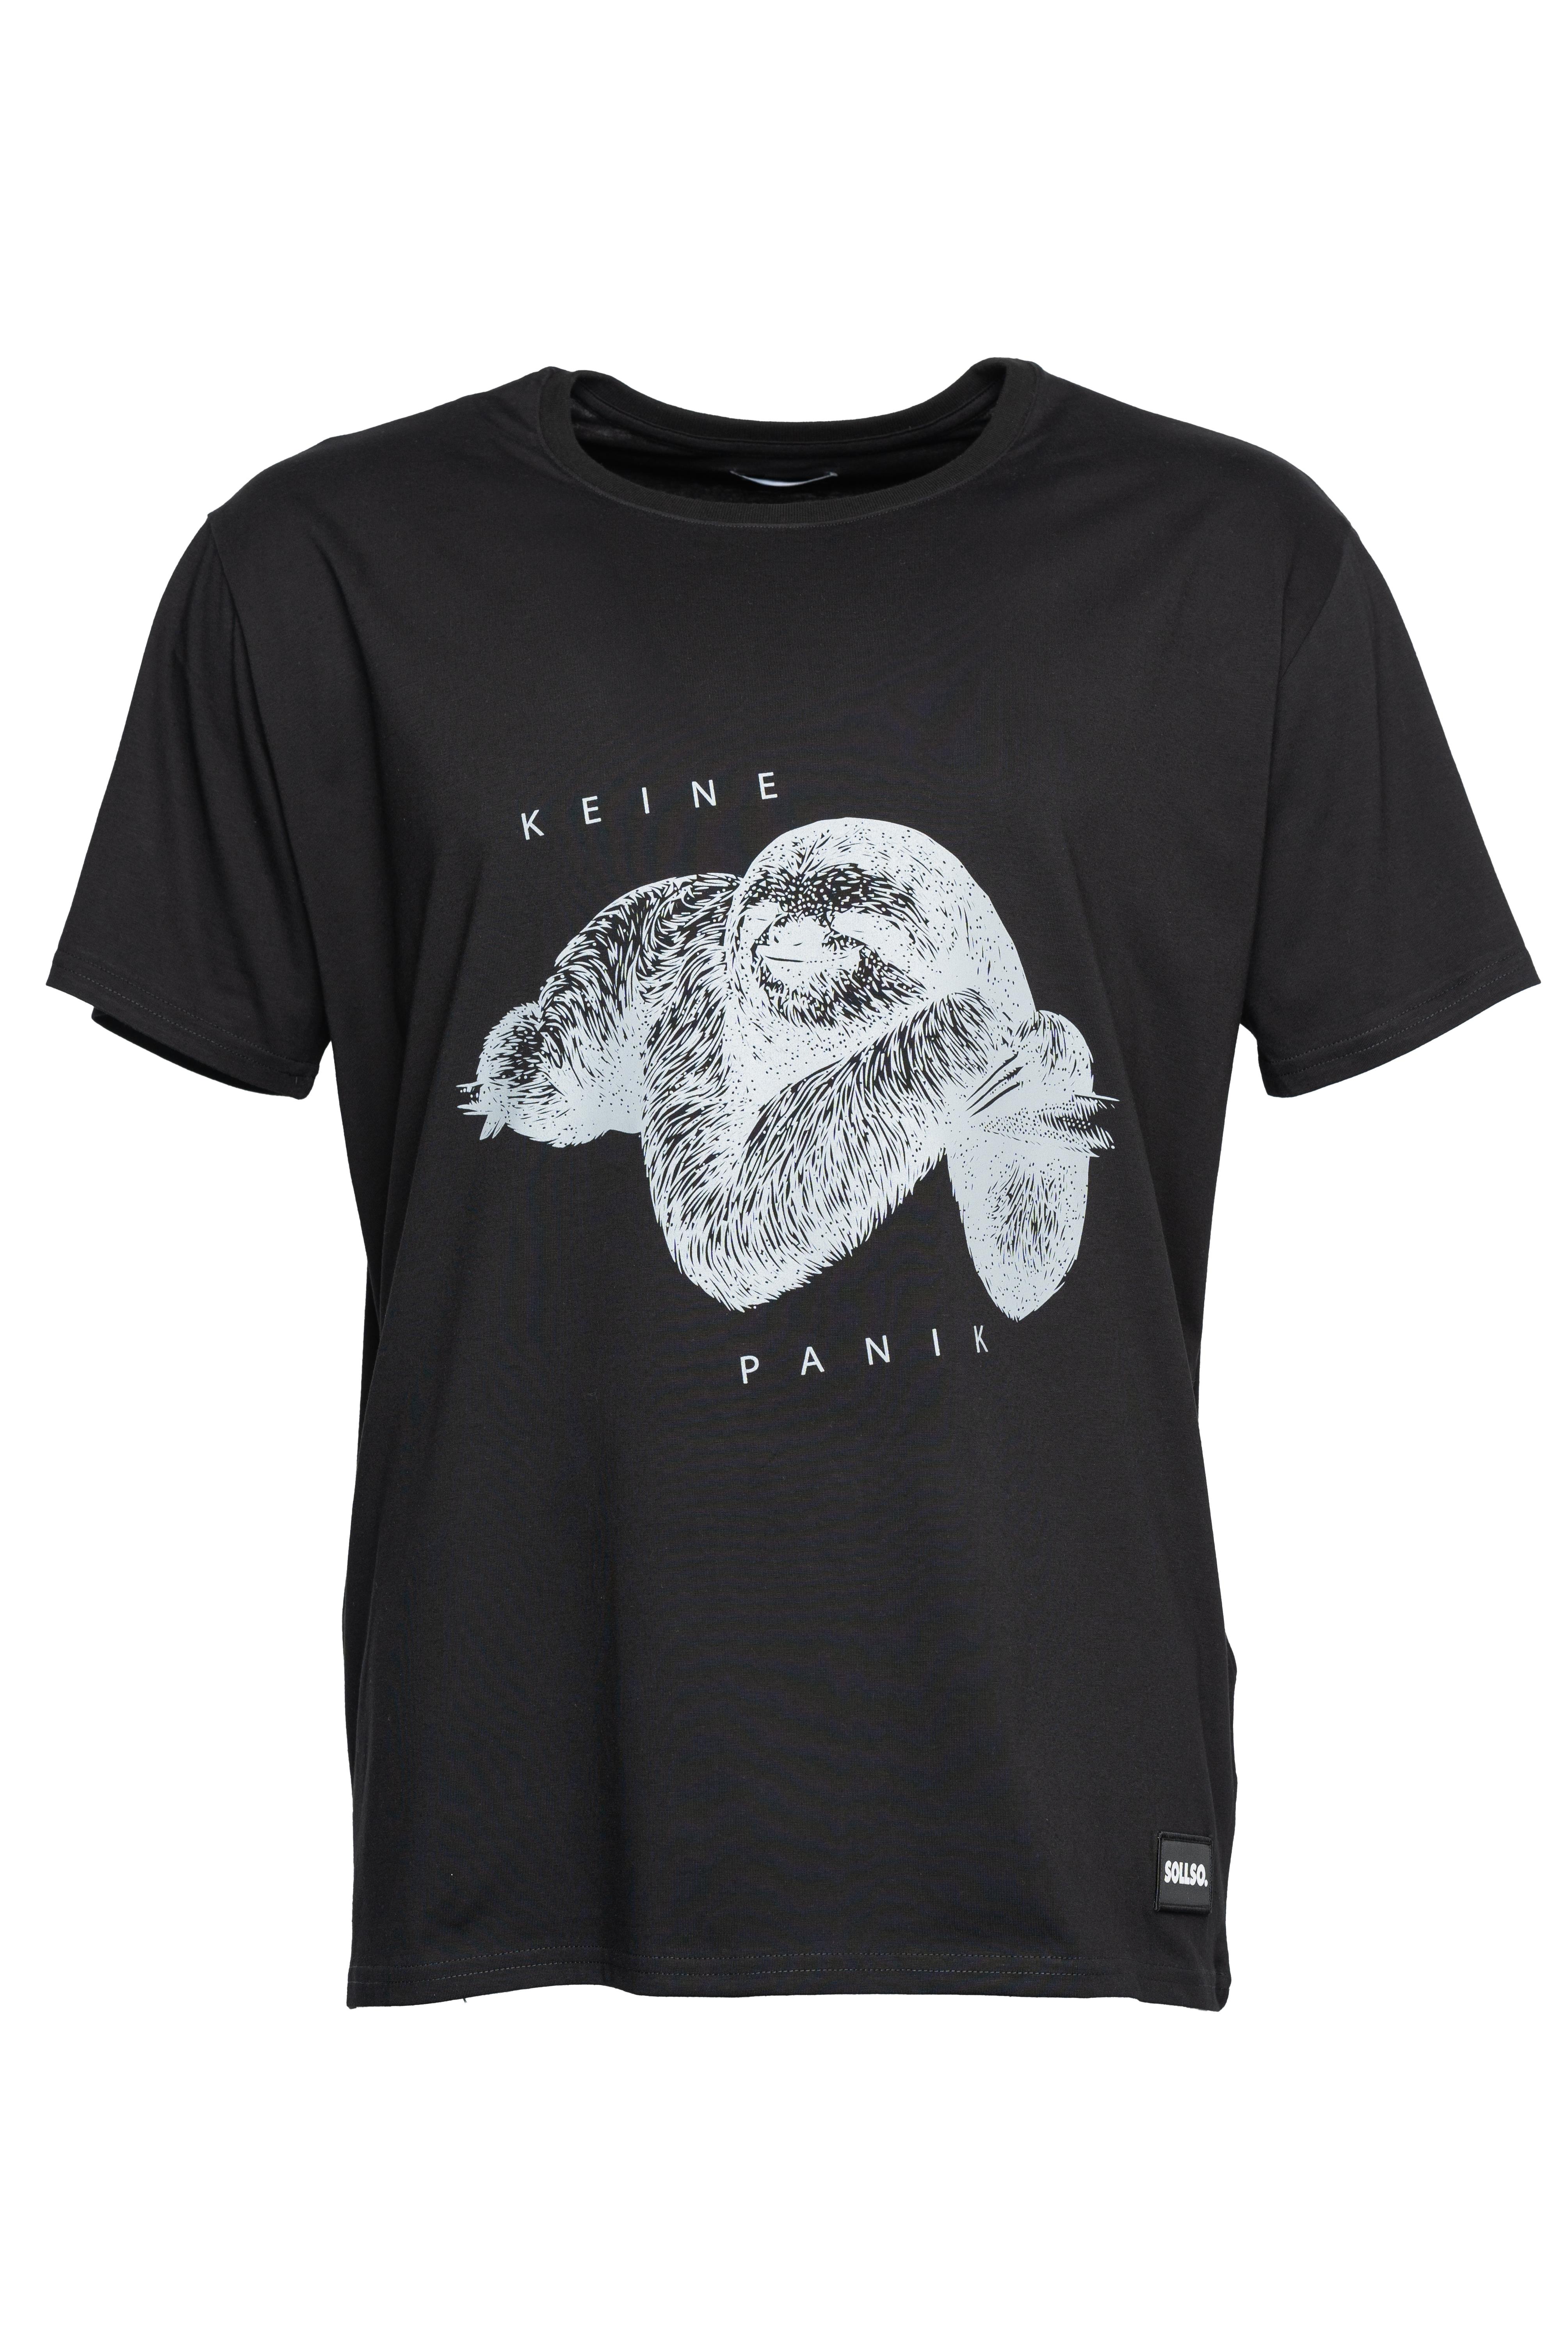 SOLLSO. T-Shirt "Keine Panik Faultier", Farbe Dark Black, Größe 7XL